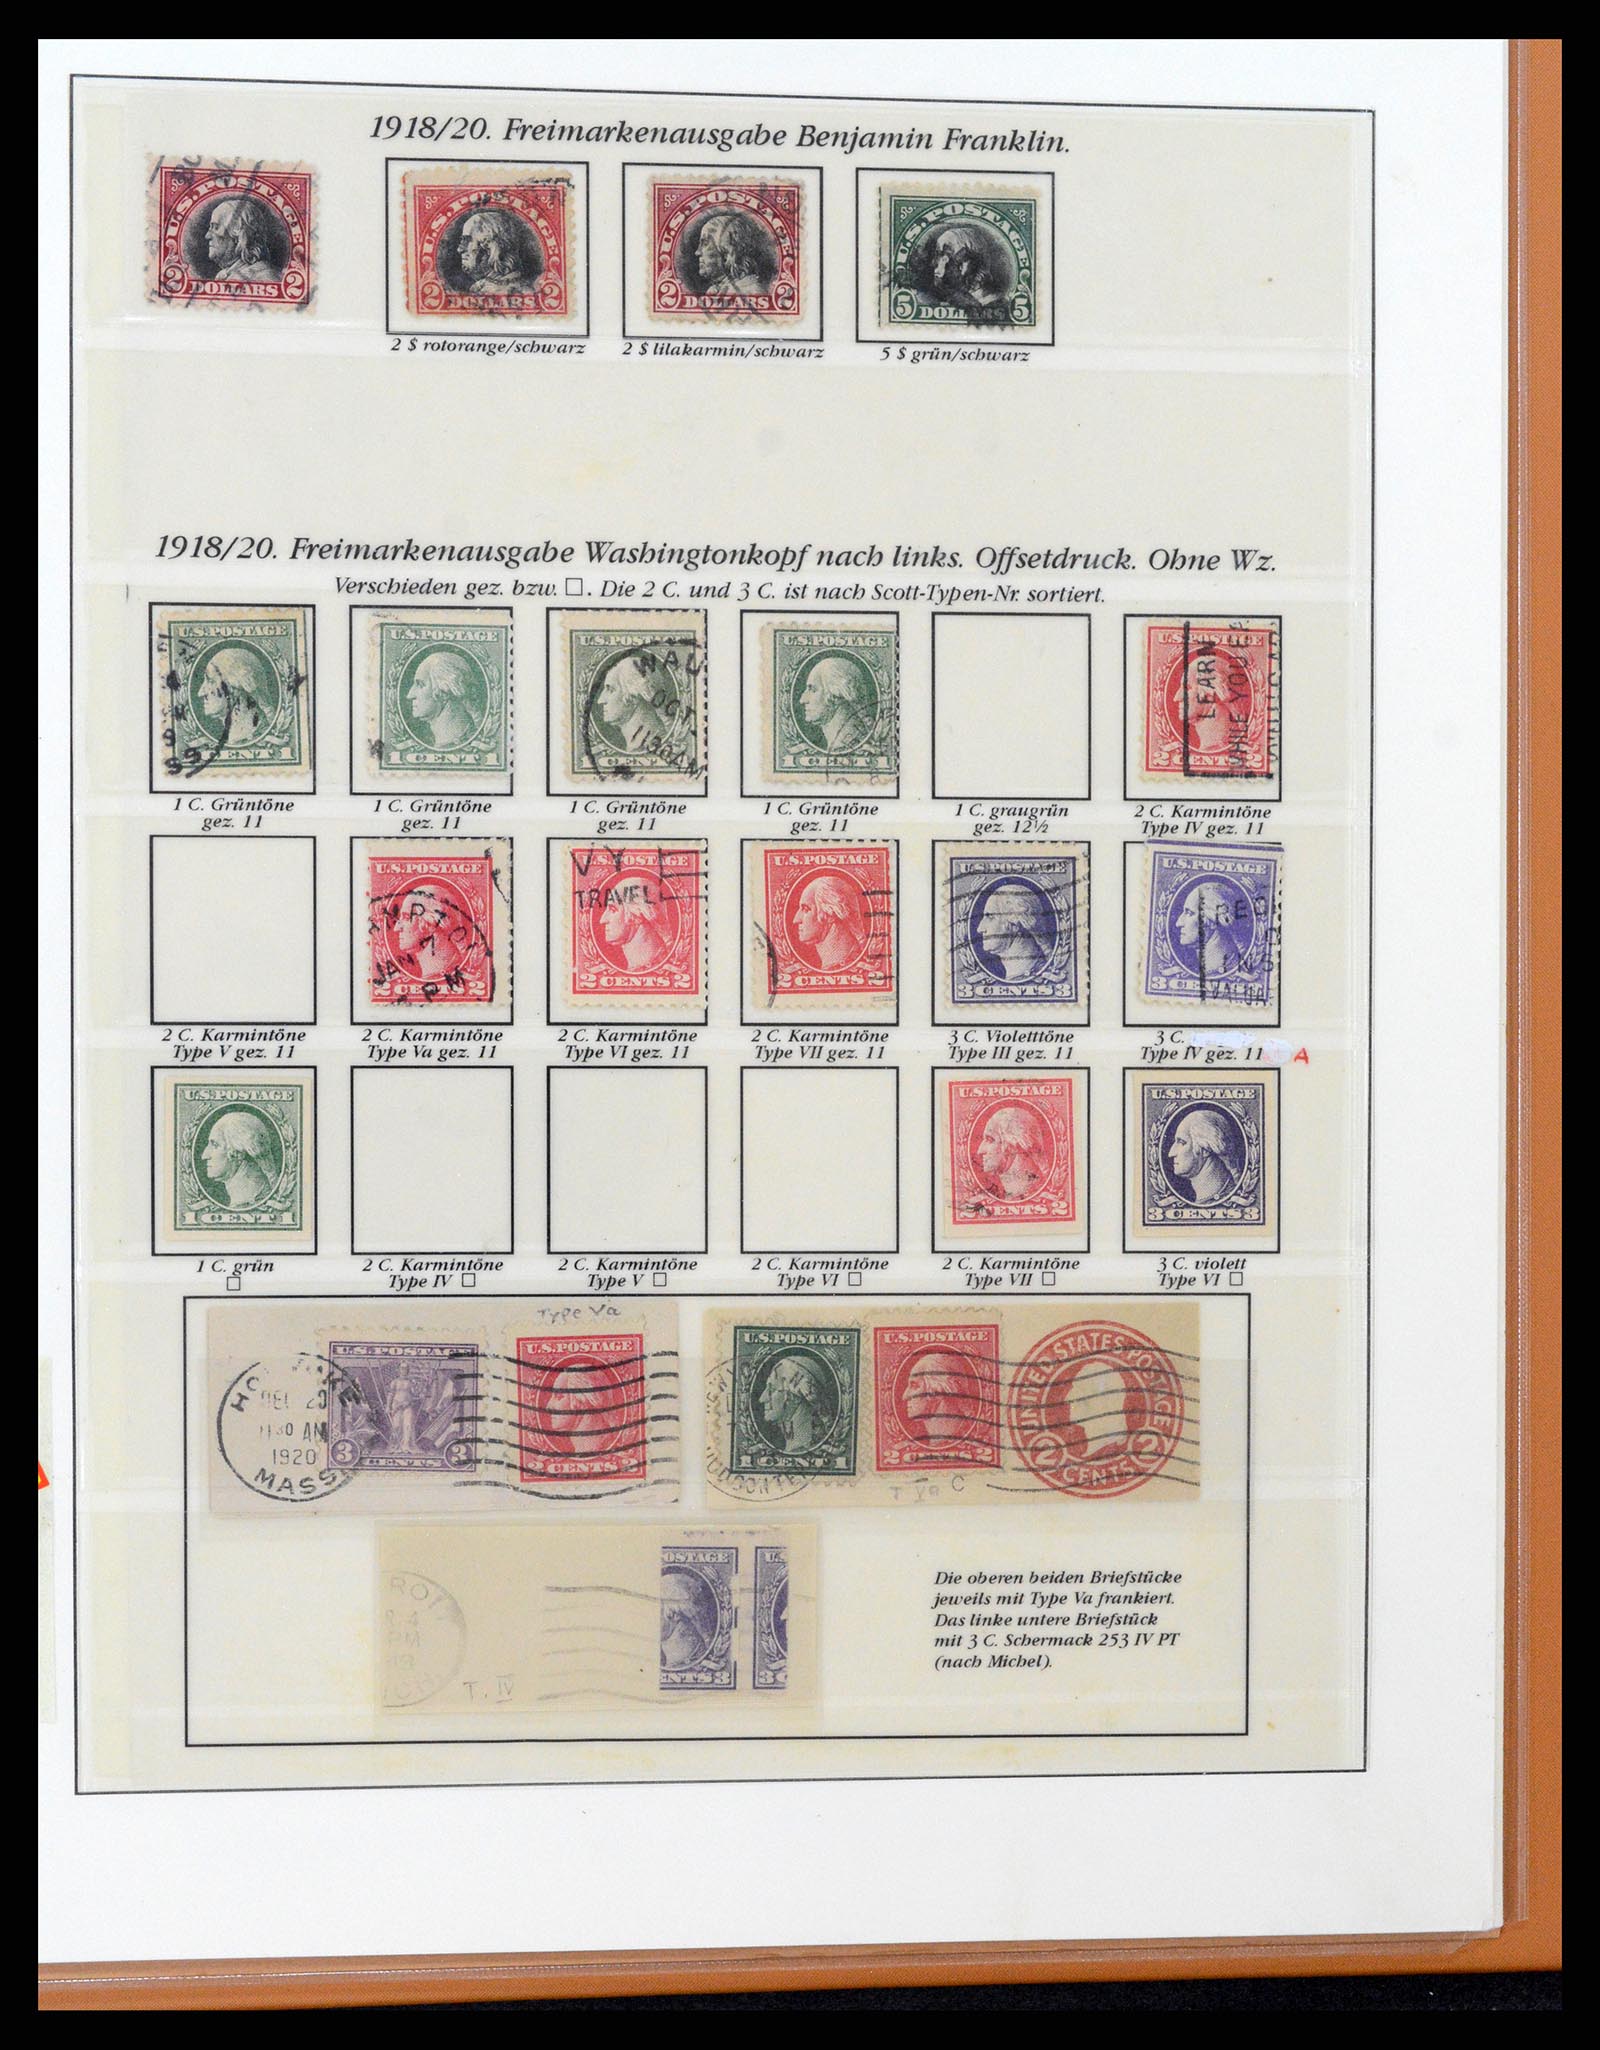 37653 060 - Stamp collection 37653 USA 1870-1954.